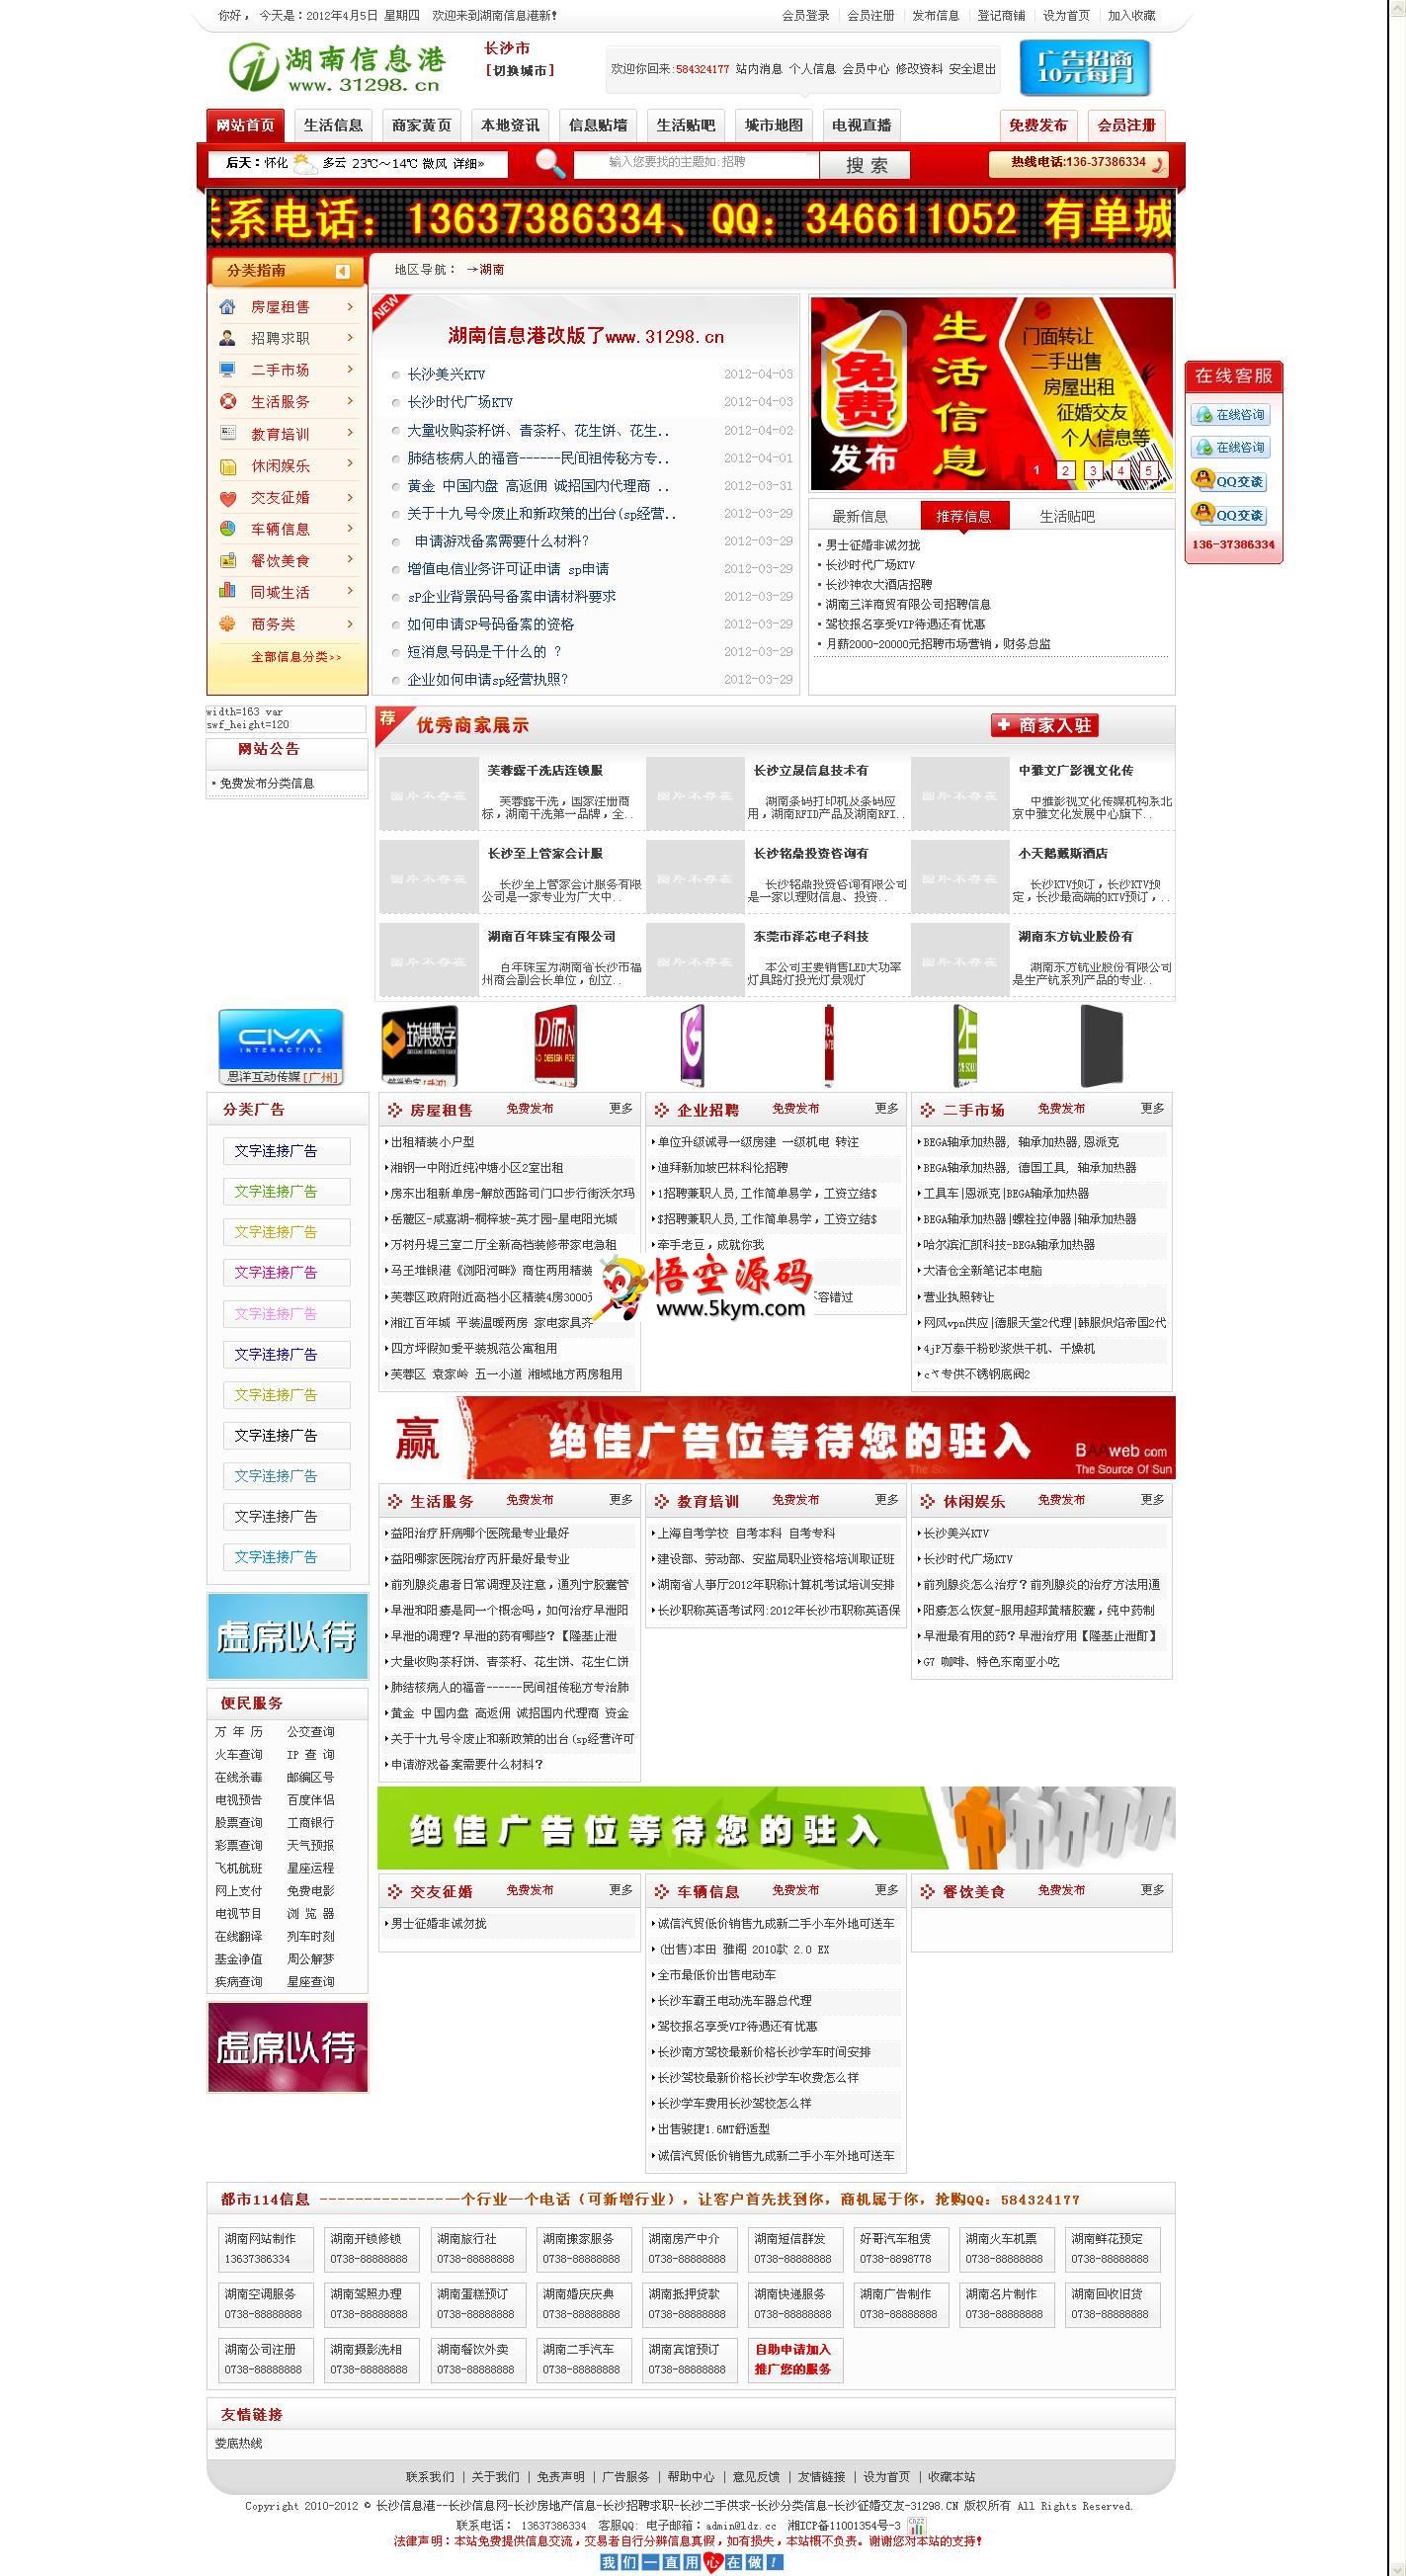 齐博B2B电子商务系统v1.0模板 红色模板